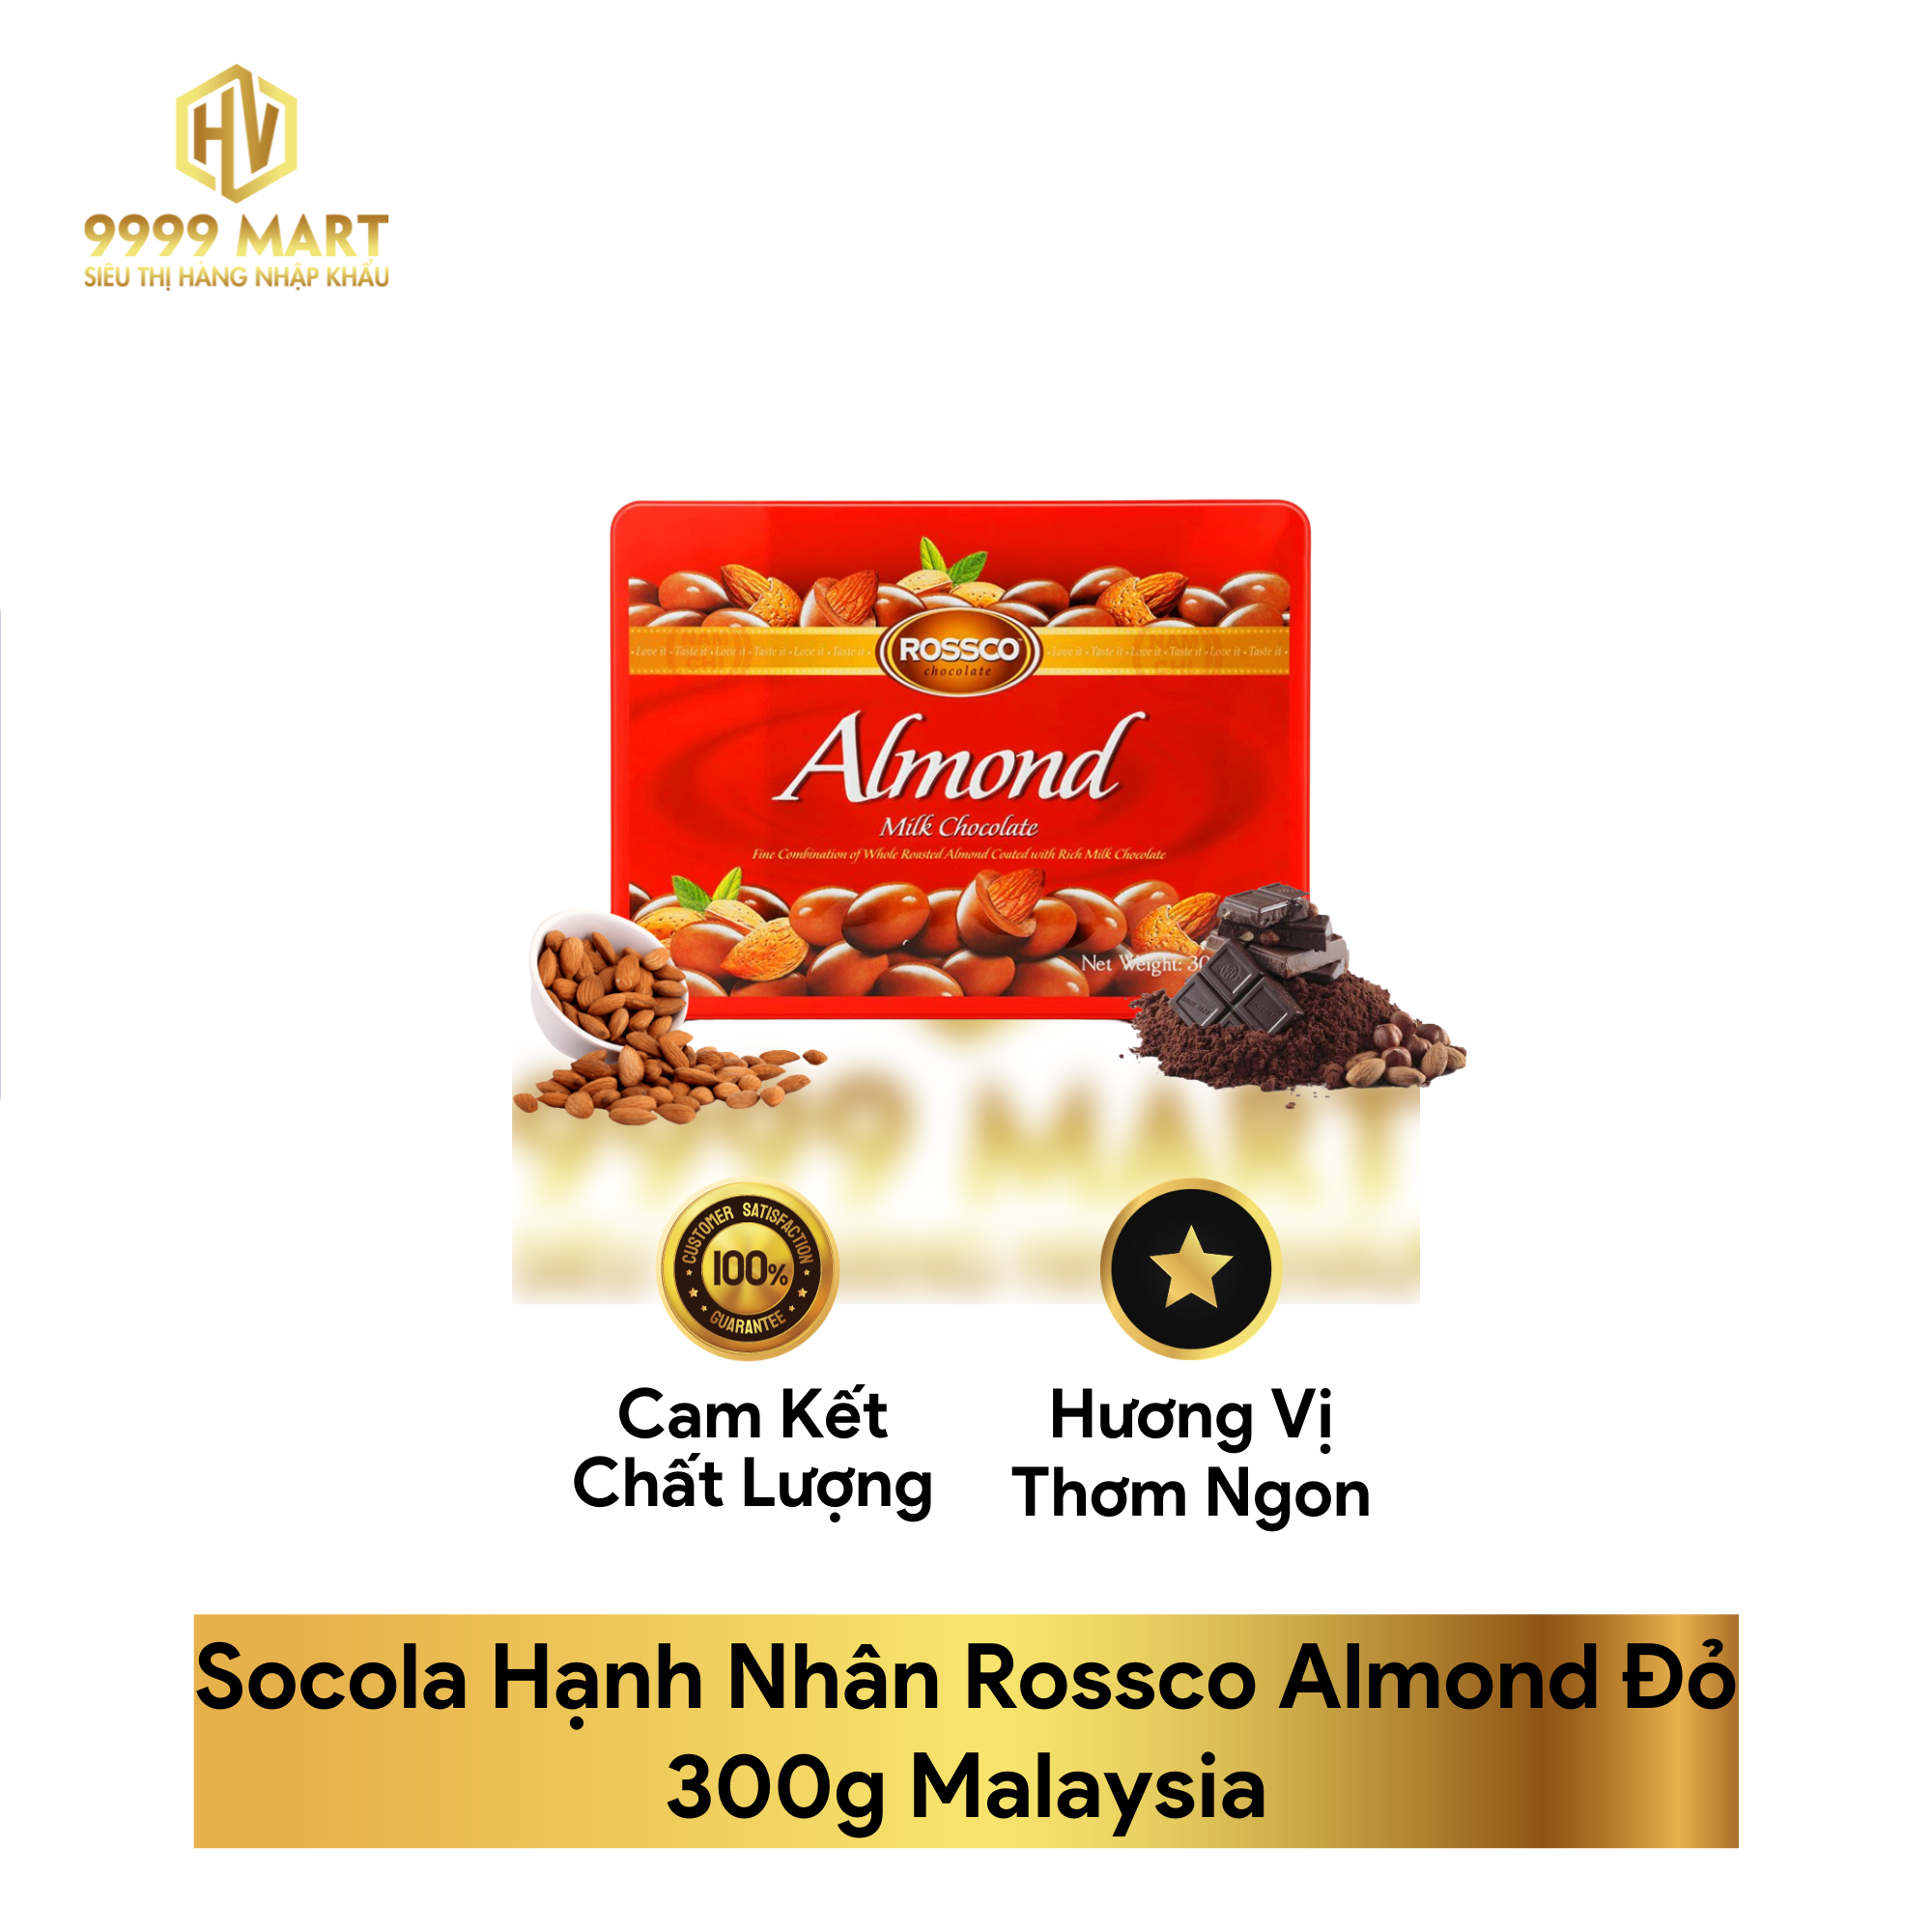  Socola Hạnh Nhân Rossco Almond Đỏ 300g Malaysia 